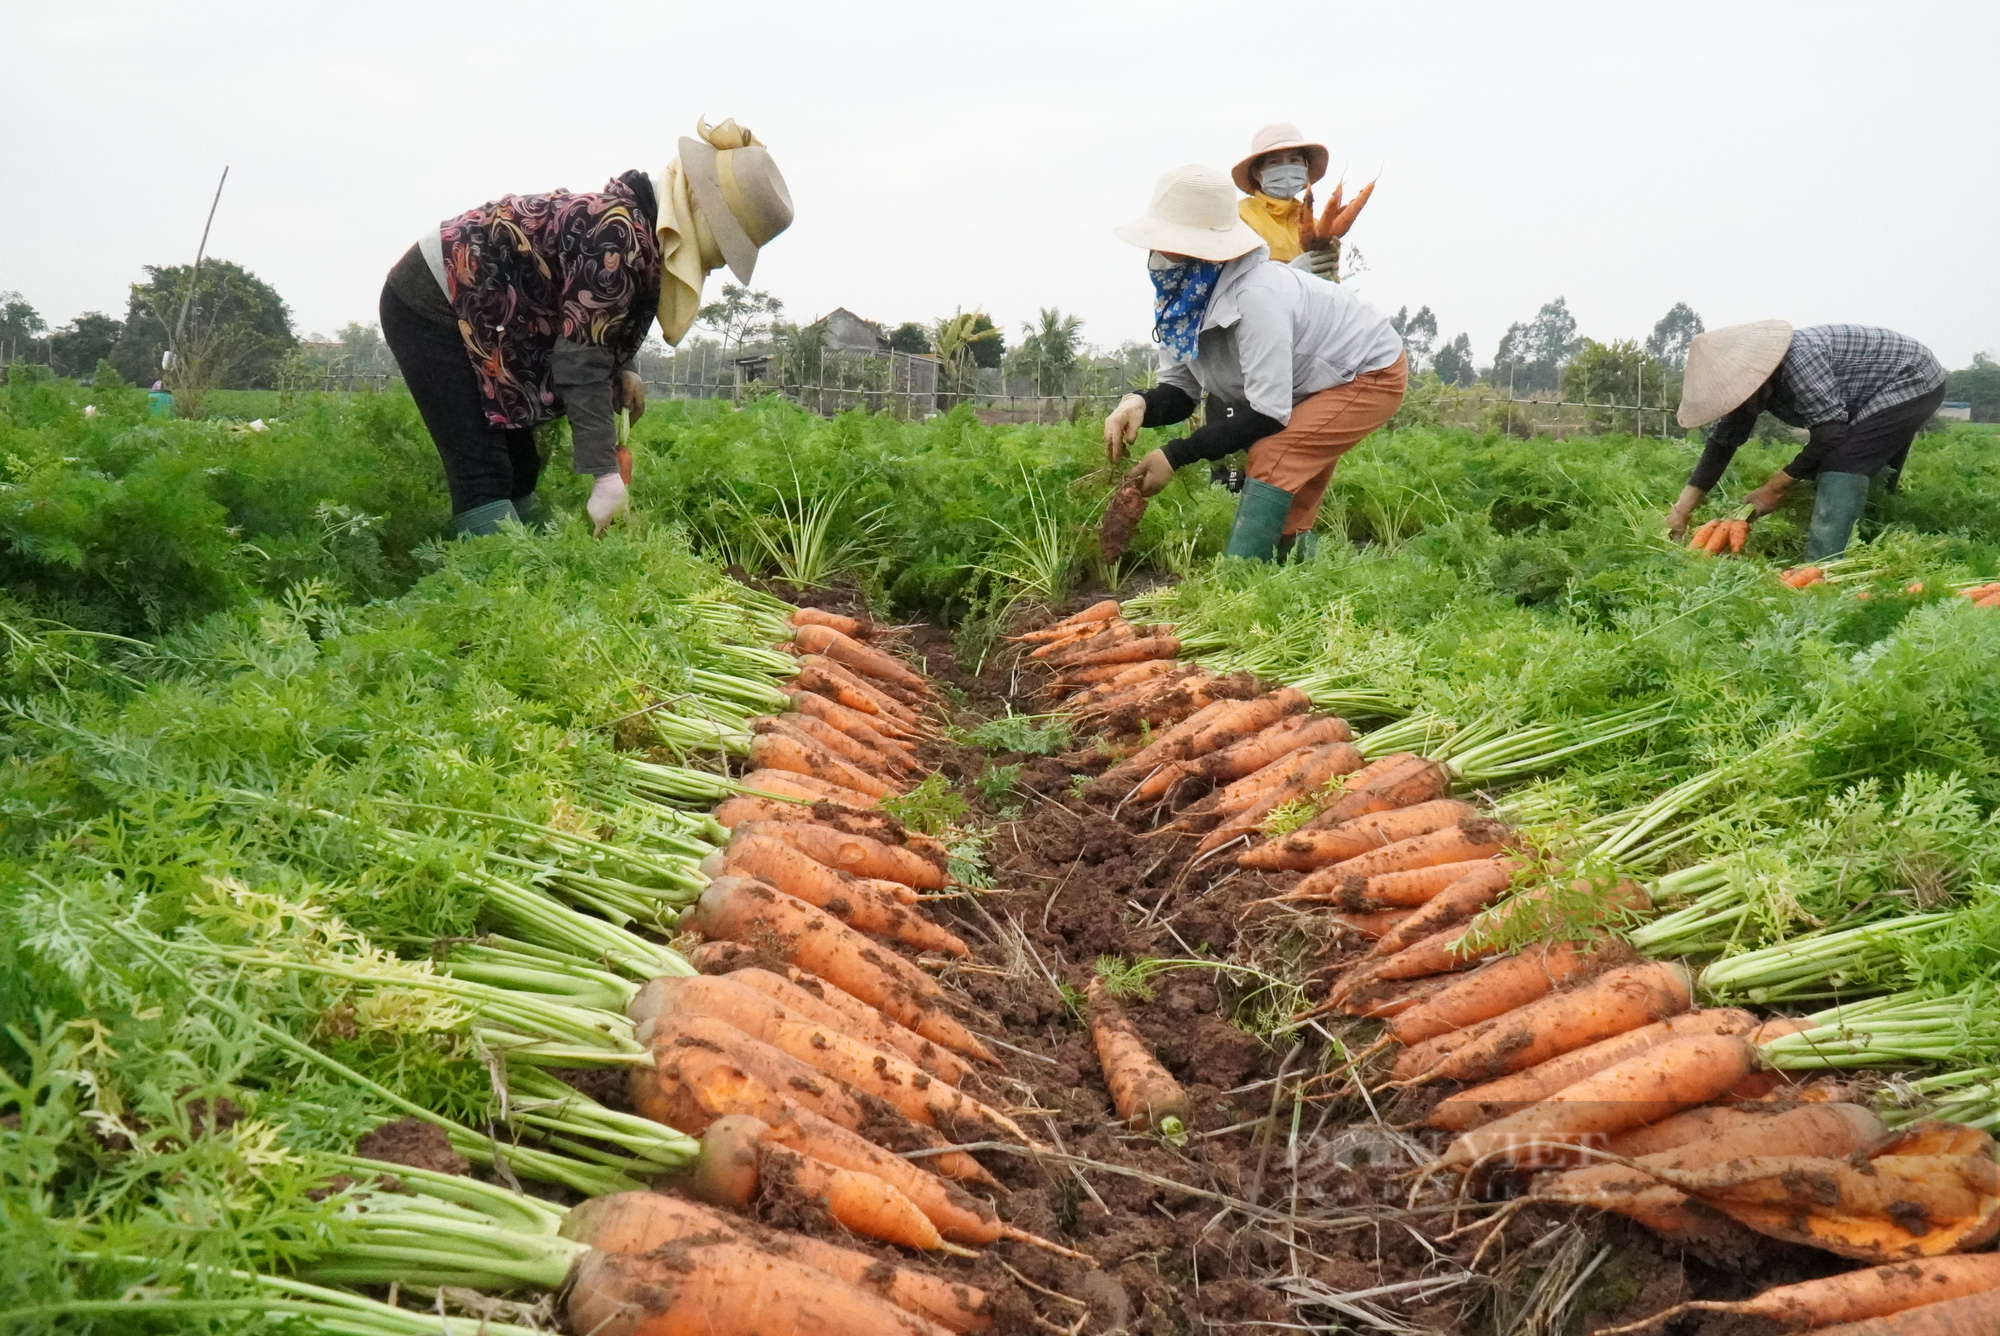 Nông dân trồng cà rốt ở Bắc Ninh trúng lớn, có nơi cho giá trị lên tới 500 triệu đồng/ha - Ảnh 2.